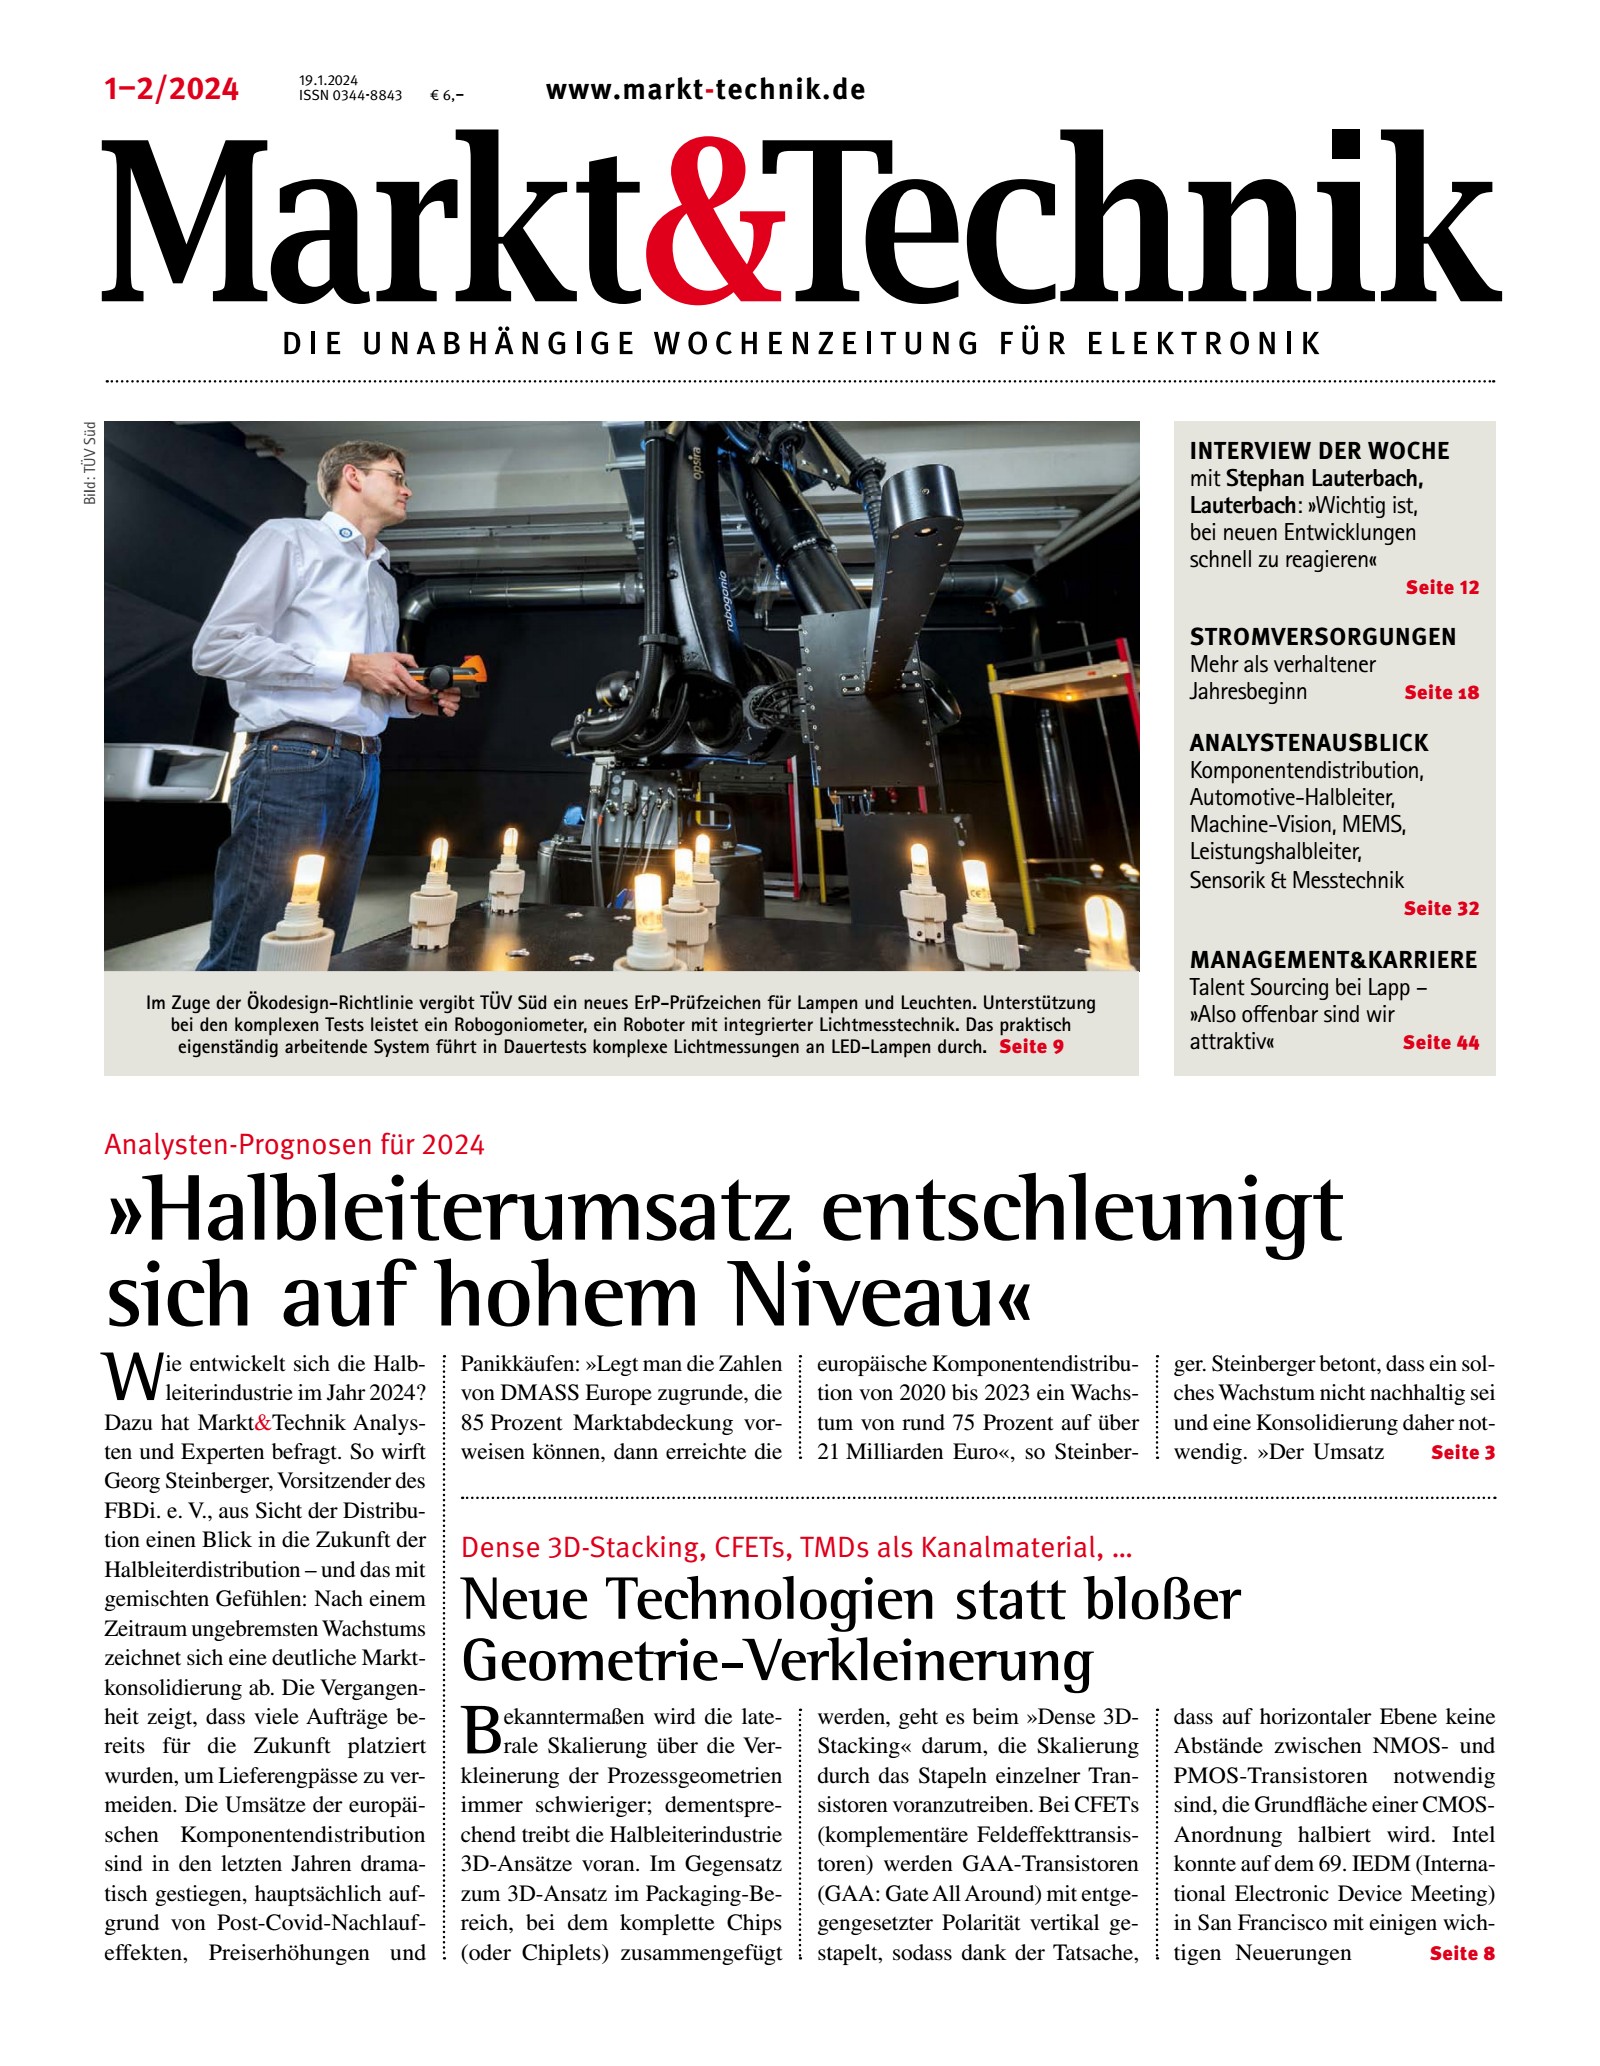 Markt&Technik 1+2/2024 Digital